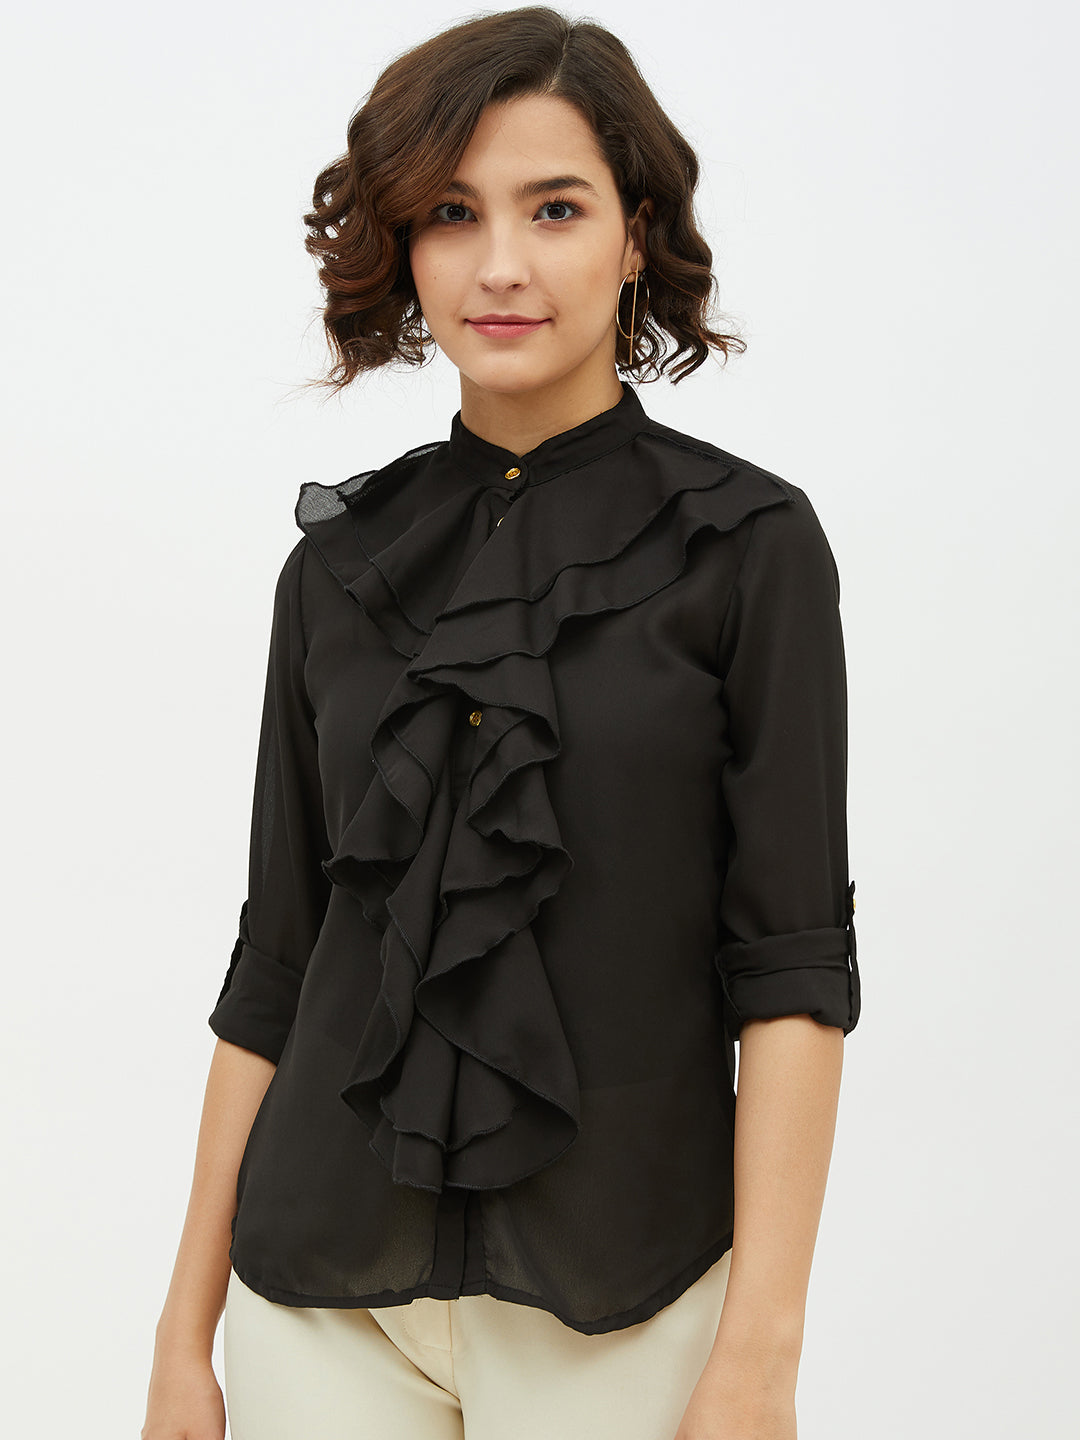 Women's Black Ruffle Polyester Moss Shirt - StyleStone